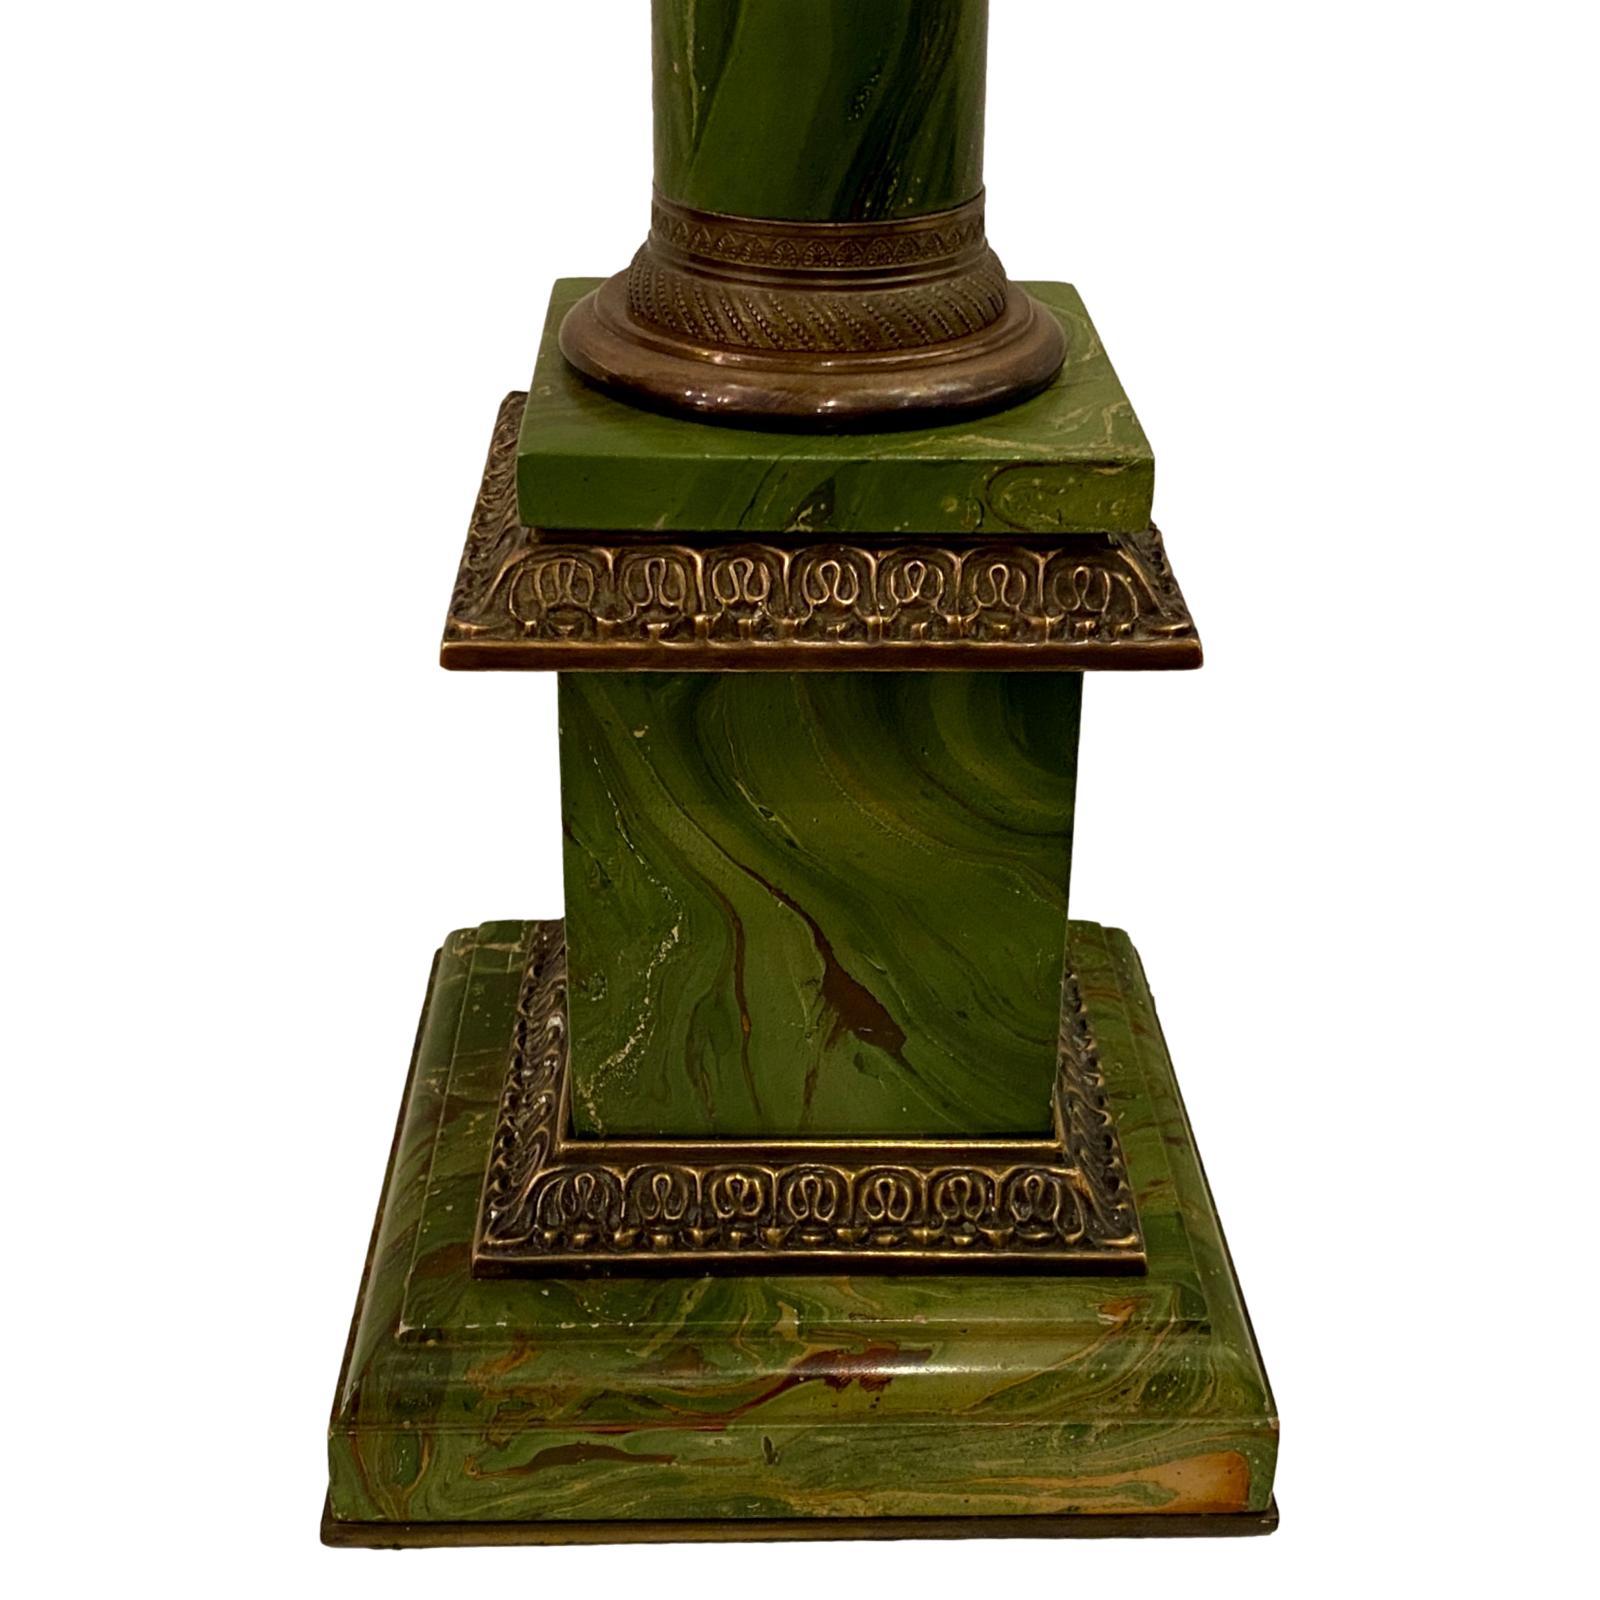 Une seule lampe de table en forme de tole peinte, datant des années 1920, avec une finition en faux marbre et des accessoires en bronze.

Mesures :
Hauteur du corps : 22
Hauteur jusqu'au support de l'abat-jour : 32